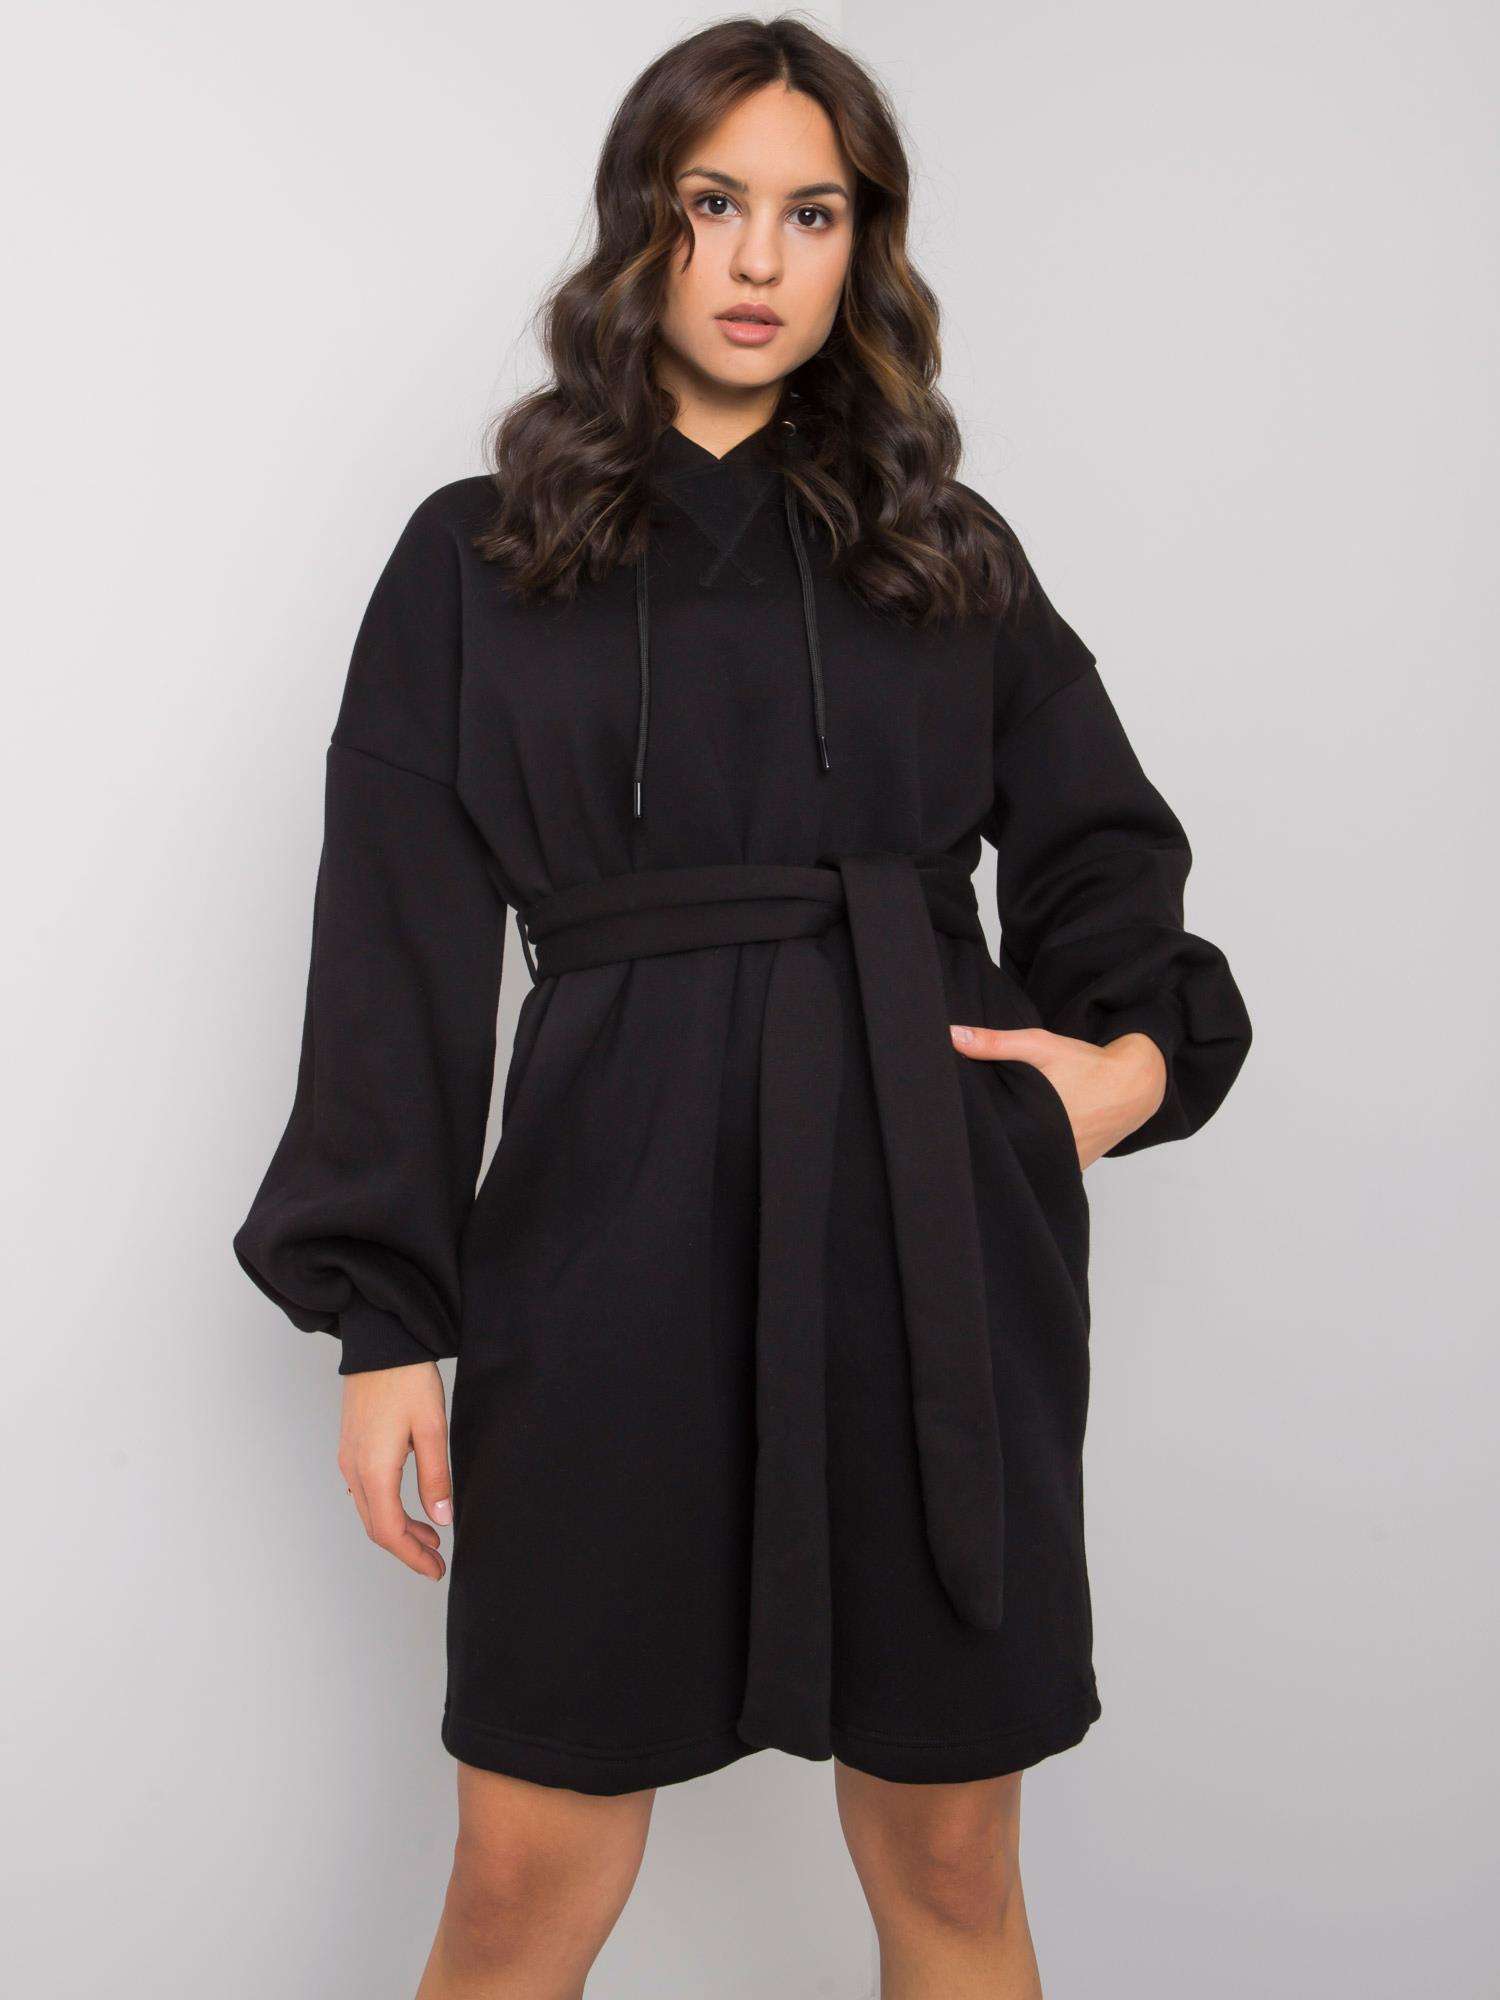 Černé mikinové šaty Raella s kapucí a opaskem RV-SK-7253.13-black Velikost: L/XL